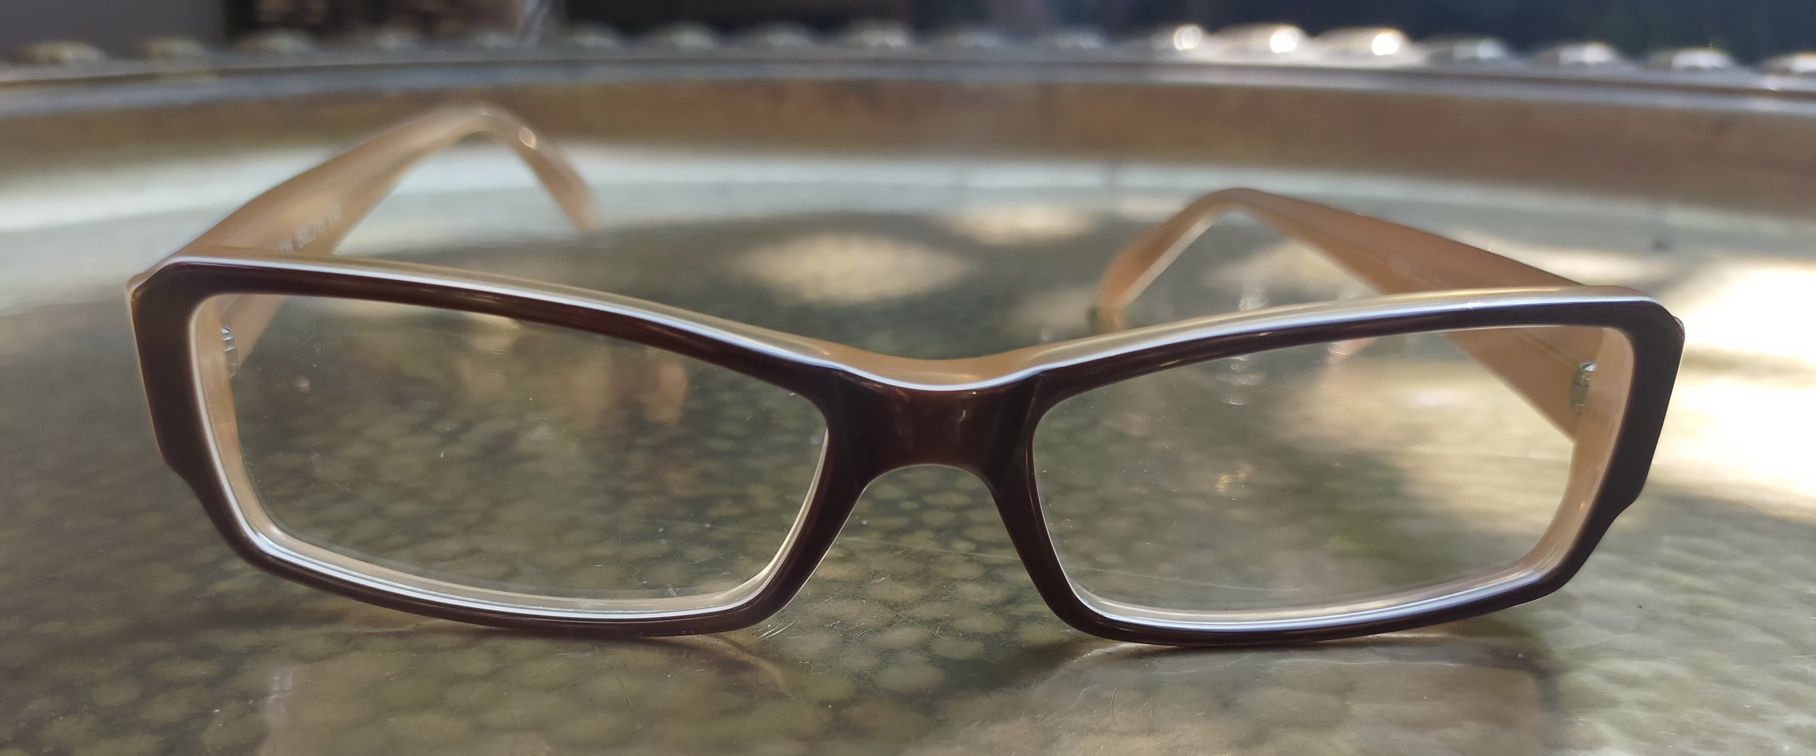 Nowe oprawki okularów od polskiego projektanta